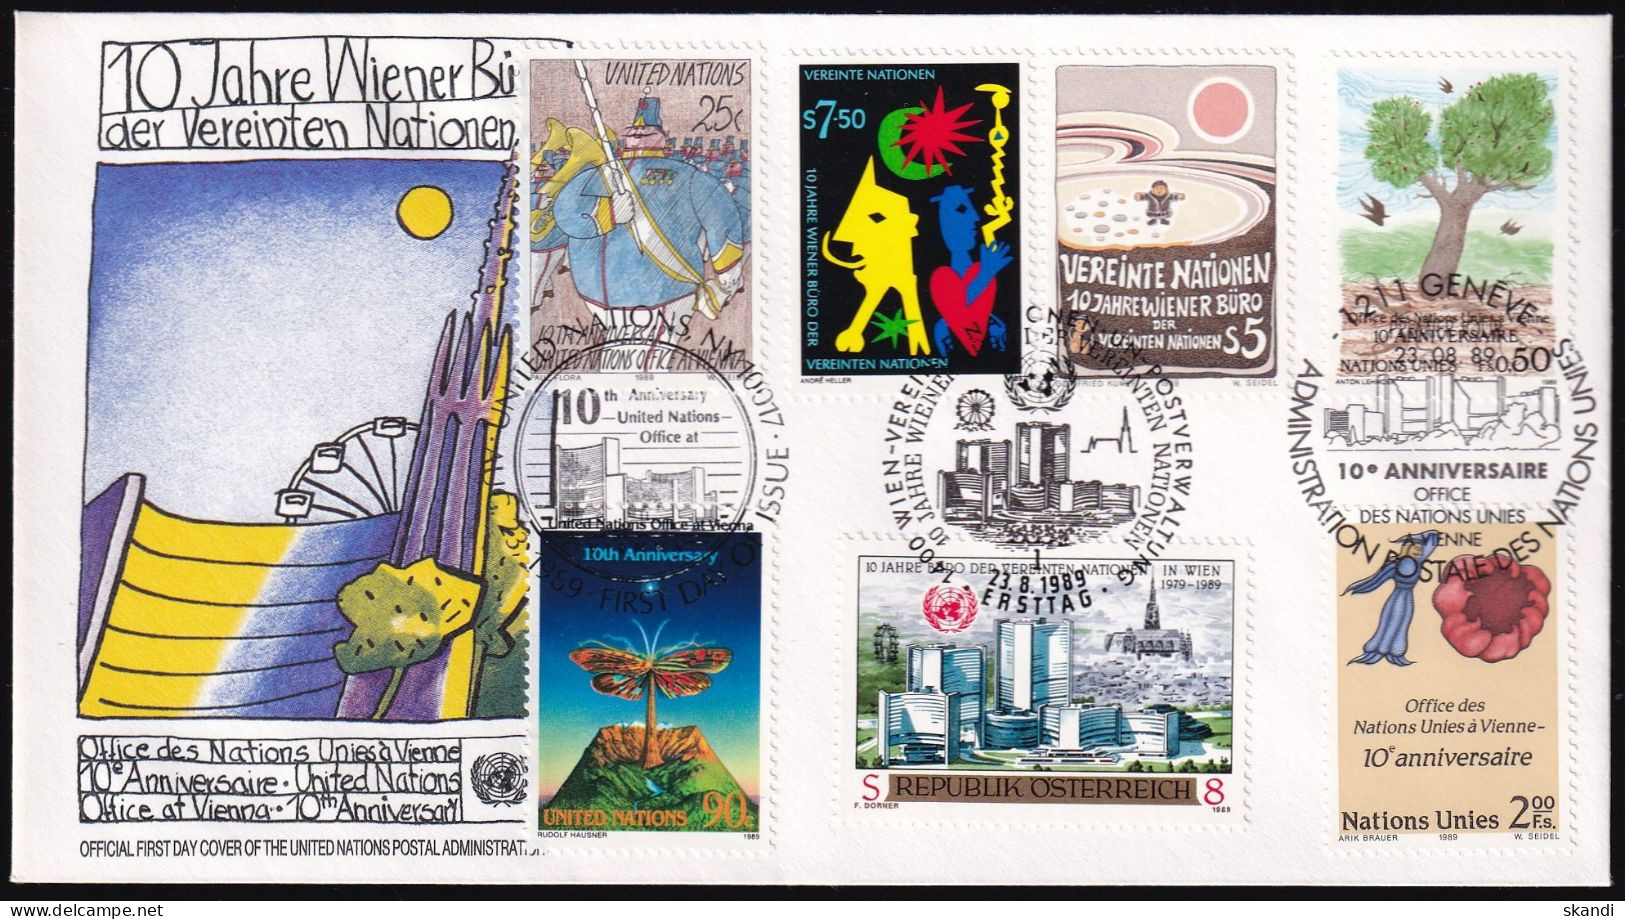 UNO NEW YORK - WIEN - GENF 1989 TRIO-FDC 10 Jahre Wiener Büro - New York/Geneva/Vienna Joint Issues